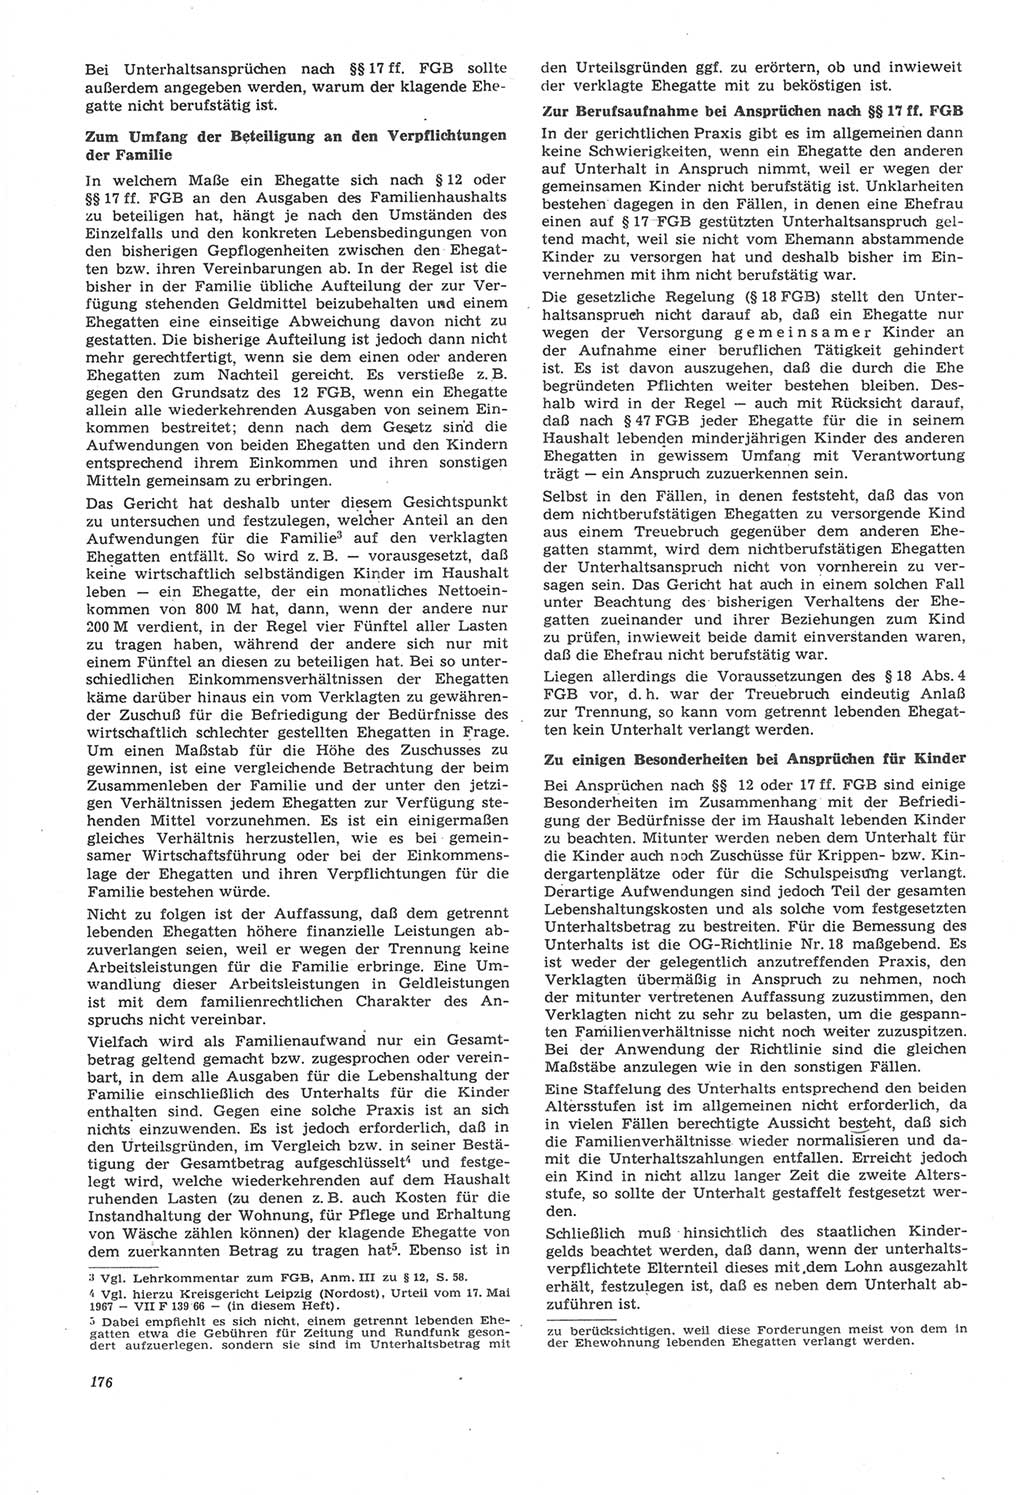 Neue Justiz (NJ), Zeitschrift für Recht und Rechtswissenschaft [Deutsche Demokratische Republik (DDR)], 22. Jahrgang 1968, Seite 176 (NJ DDR 1968, S. 176)